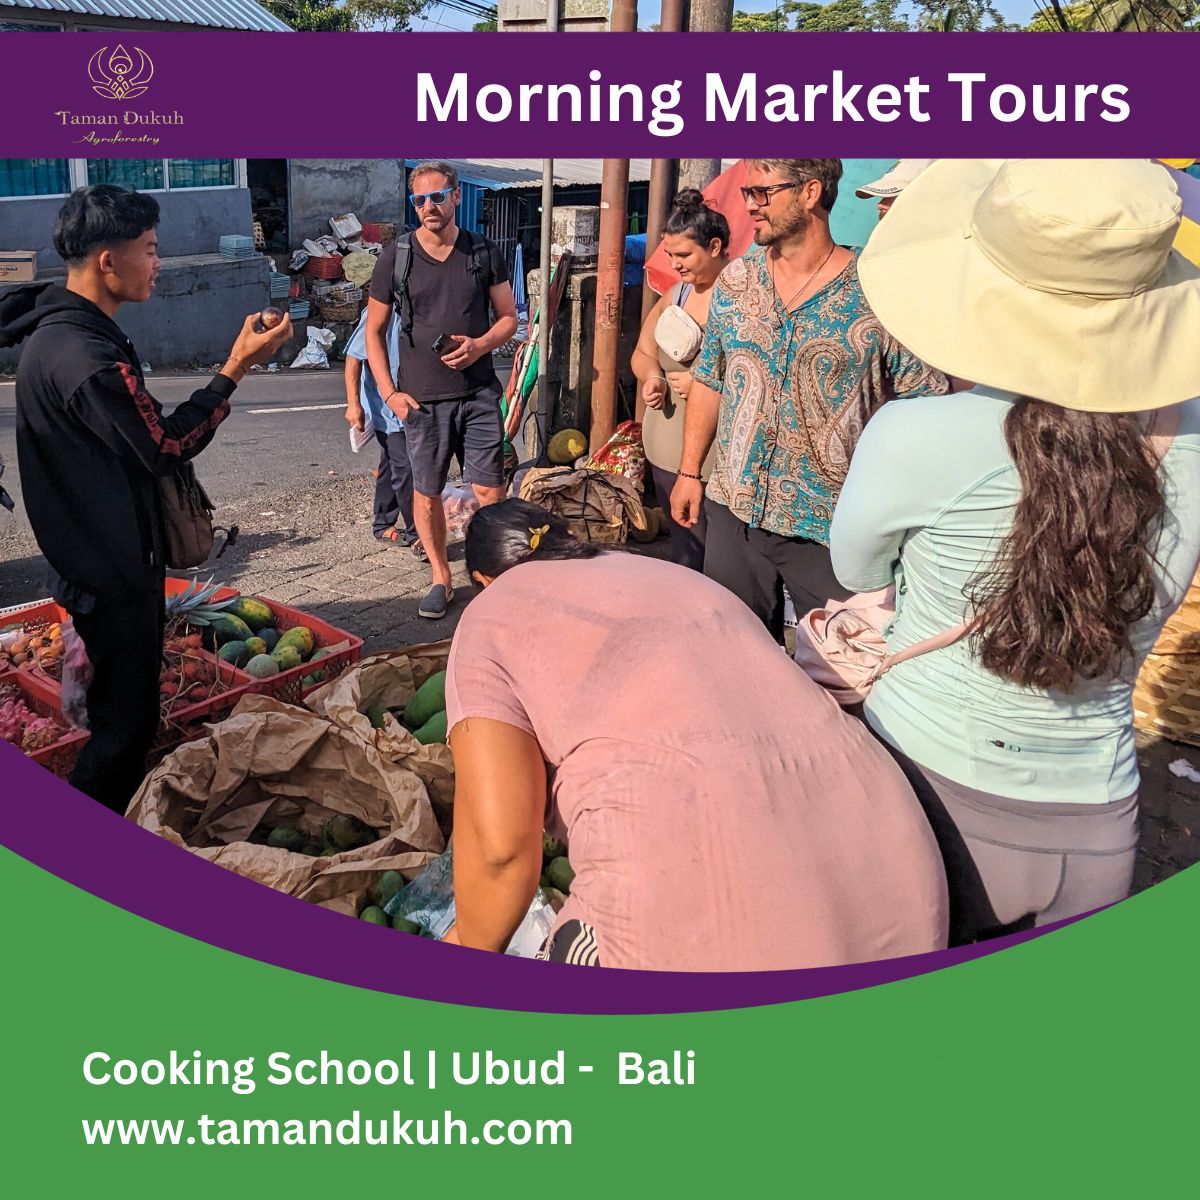 taman dukuh morning market visit tours